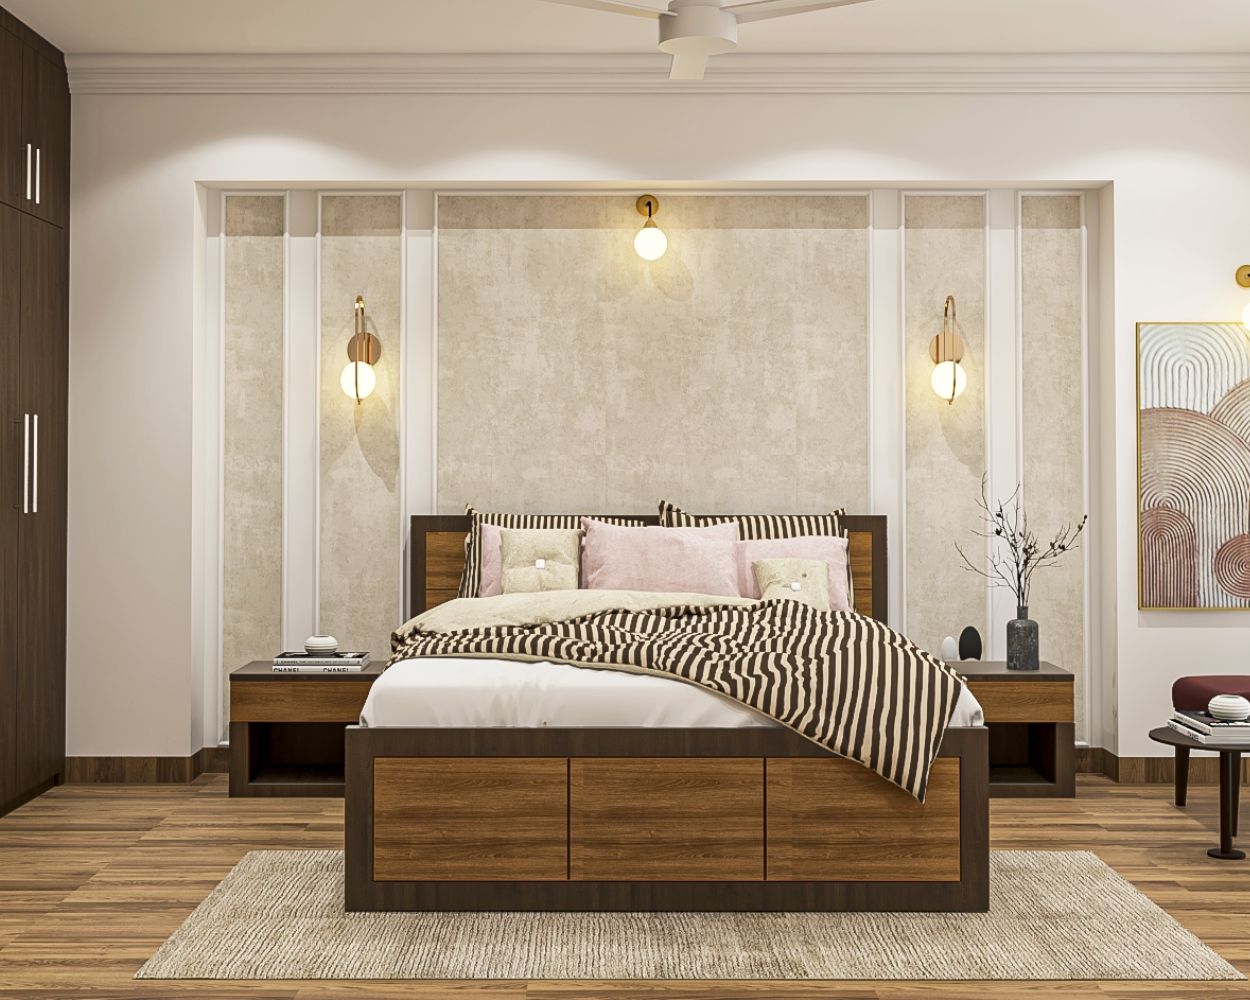 Modern Beige Textured Bedroom Wallpaper Design